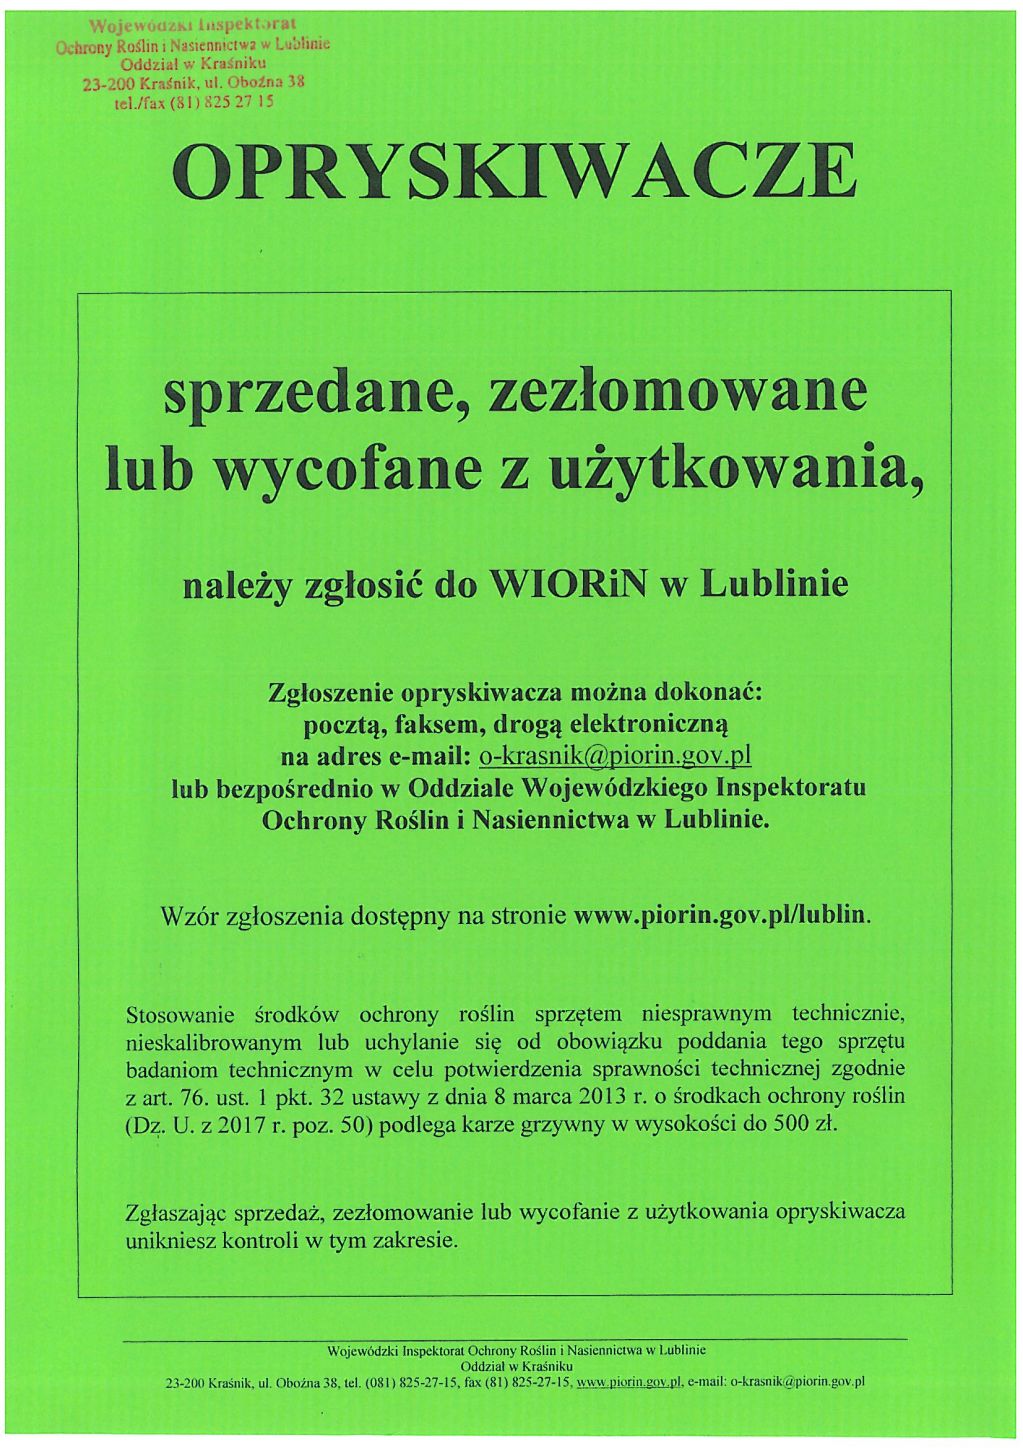 Opryskiwacze sprzedane, zezłomowane lub wycofane z uzytkowania należy zgłaszać do WIORiN w Lublinie